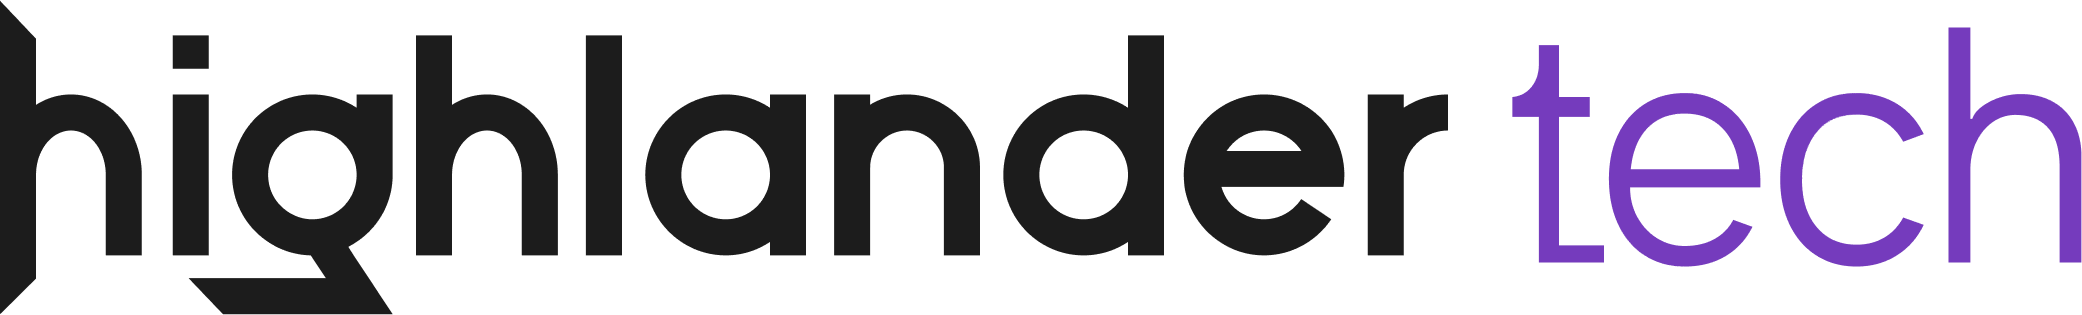 Highlander Tech Logo